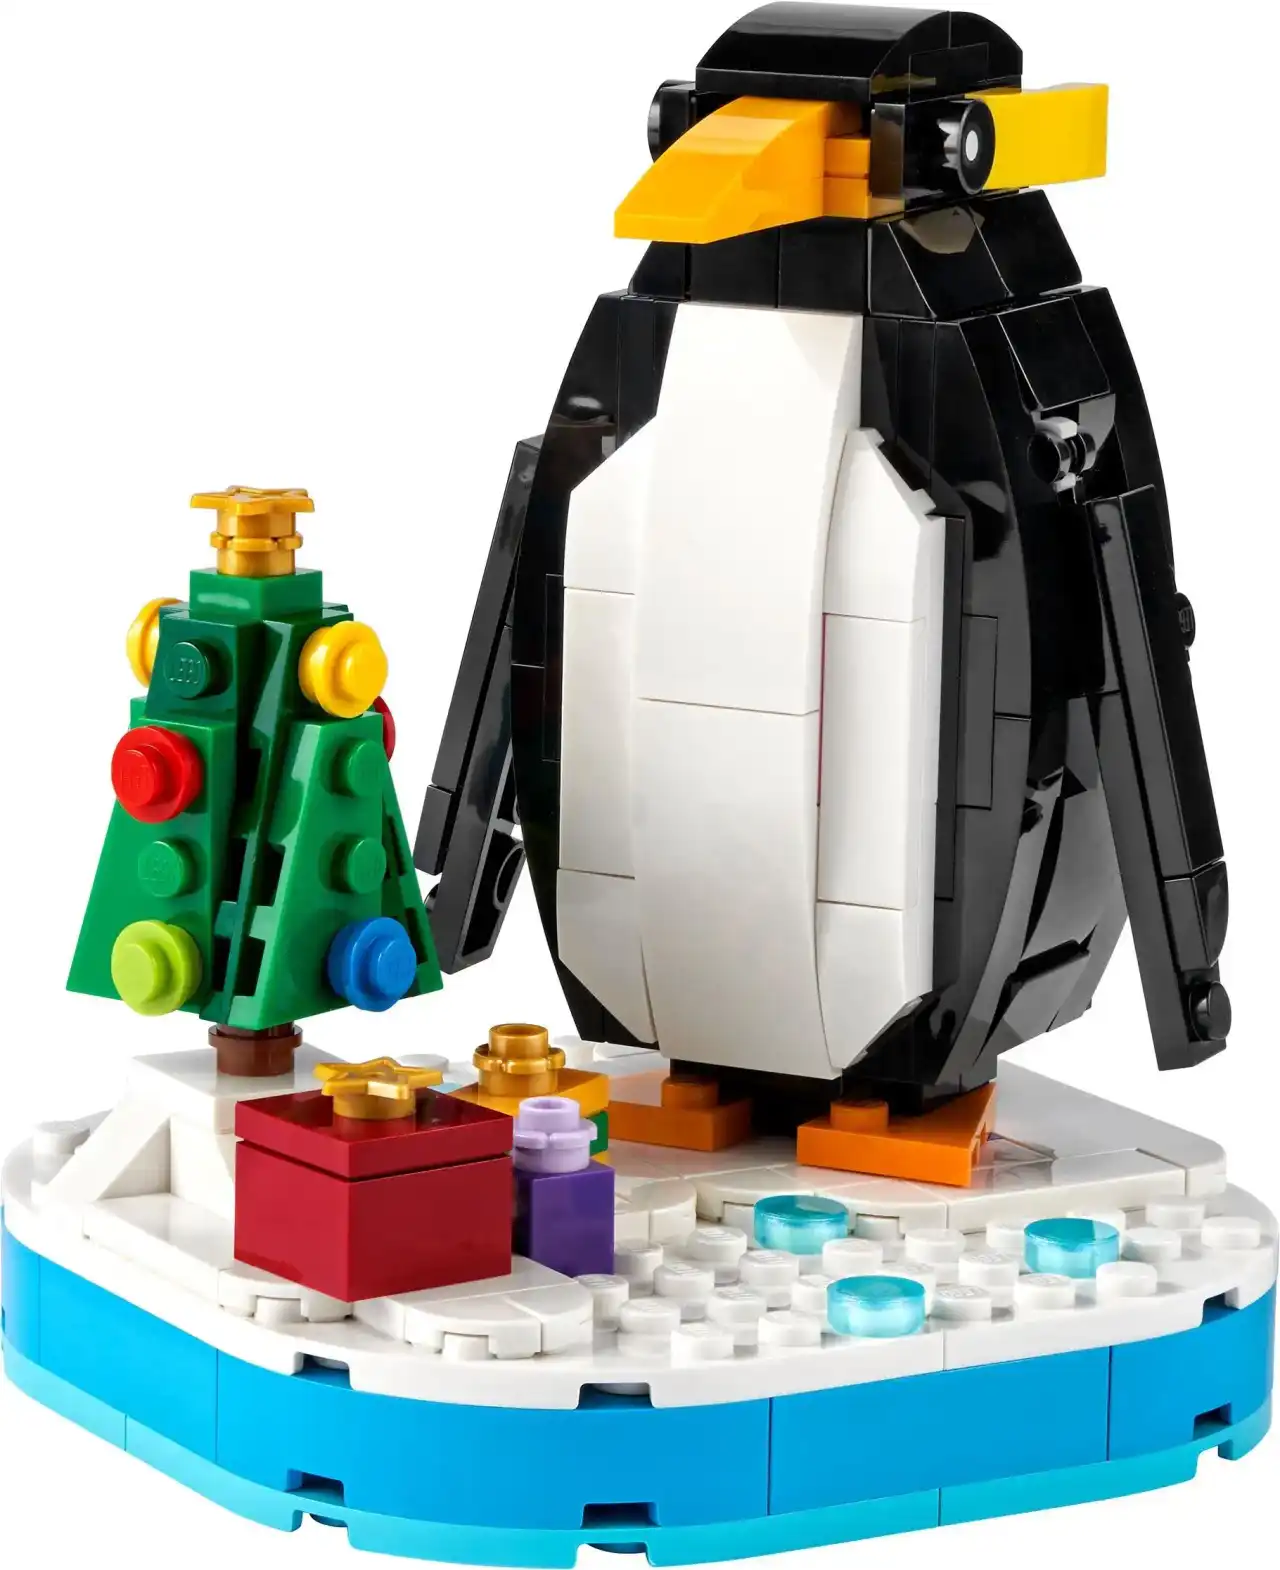 40498 - Christmas Penguin